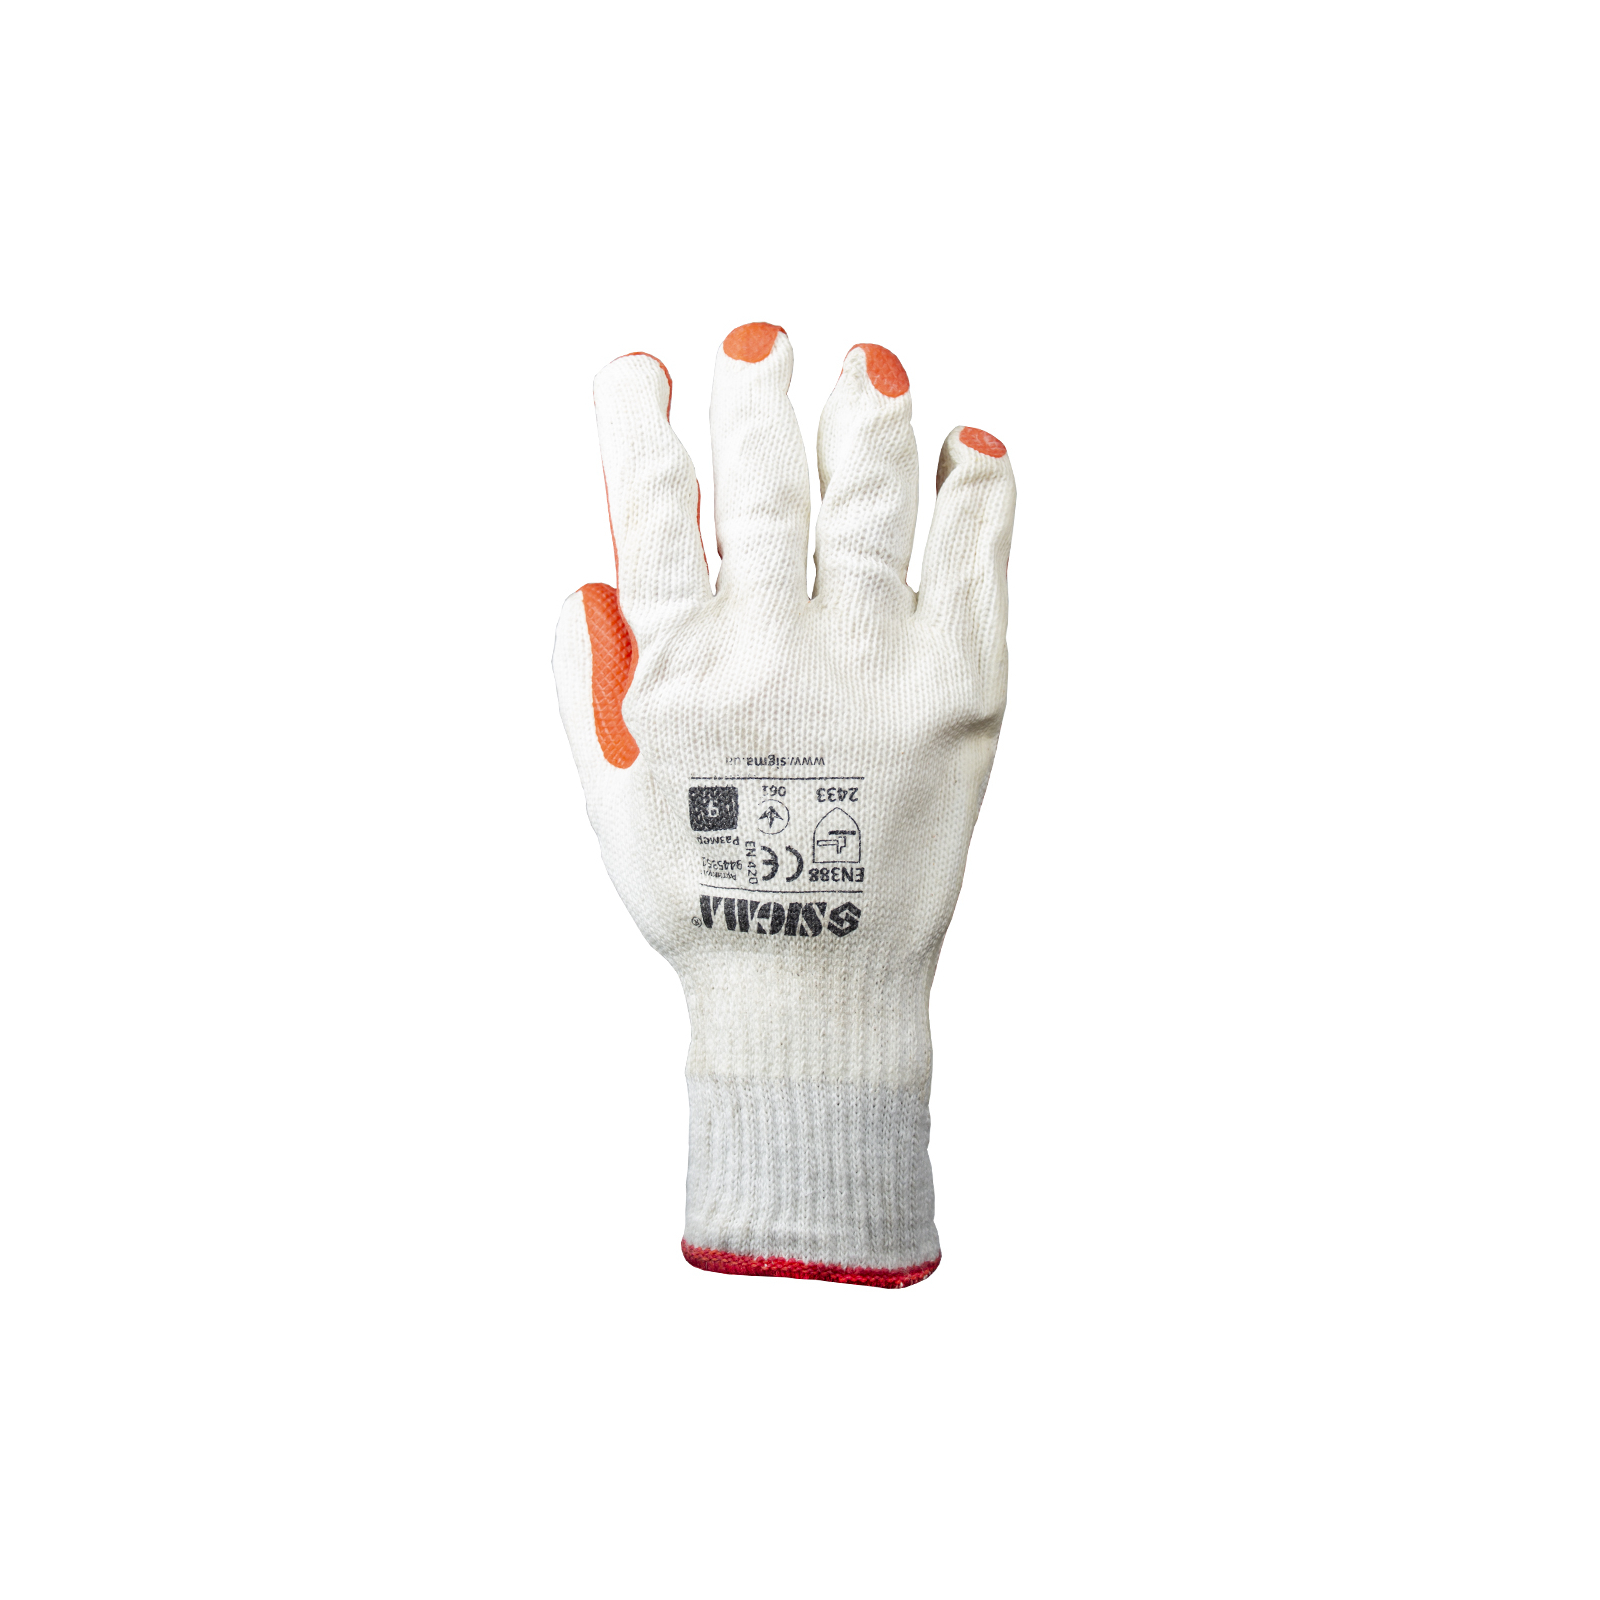 Защитные перчатки Sigma стекольщика (манжет) (9445351) изображение 2